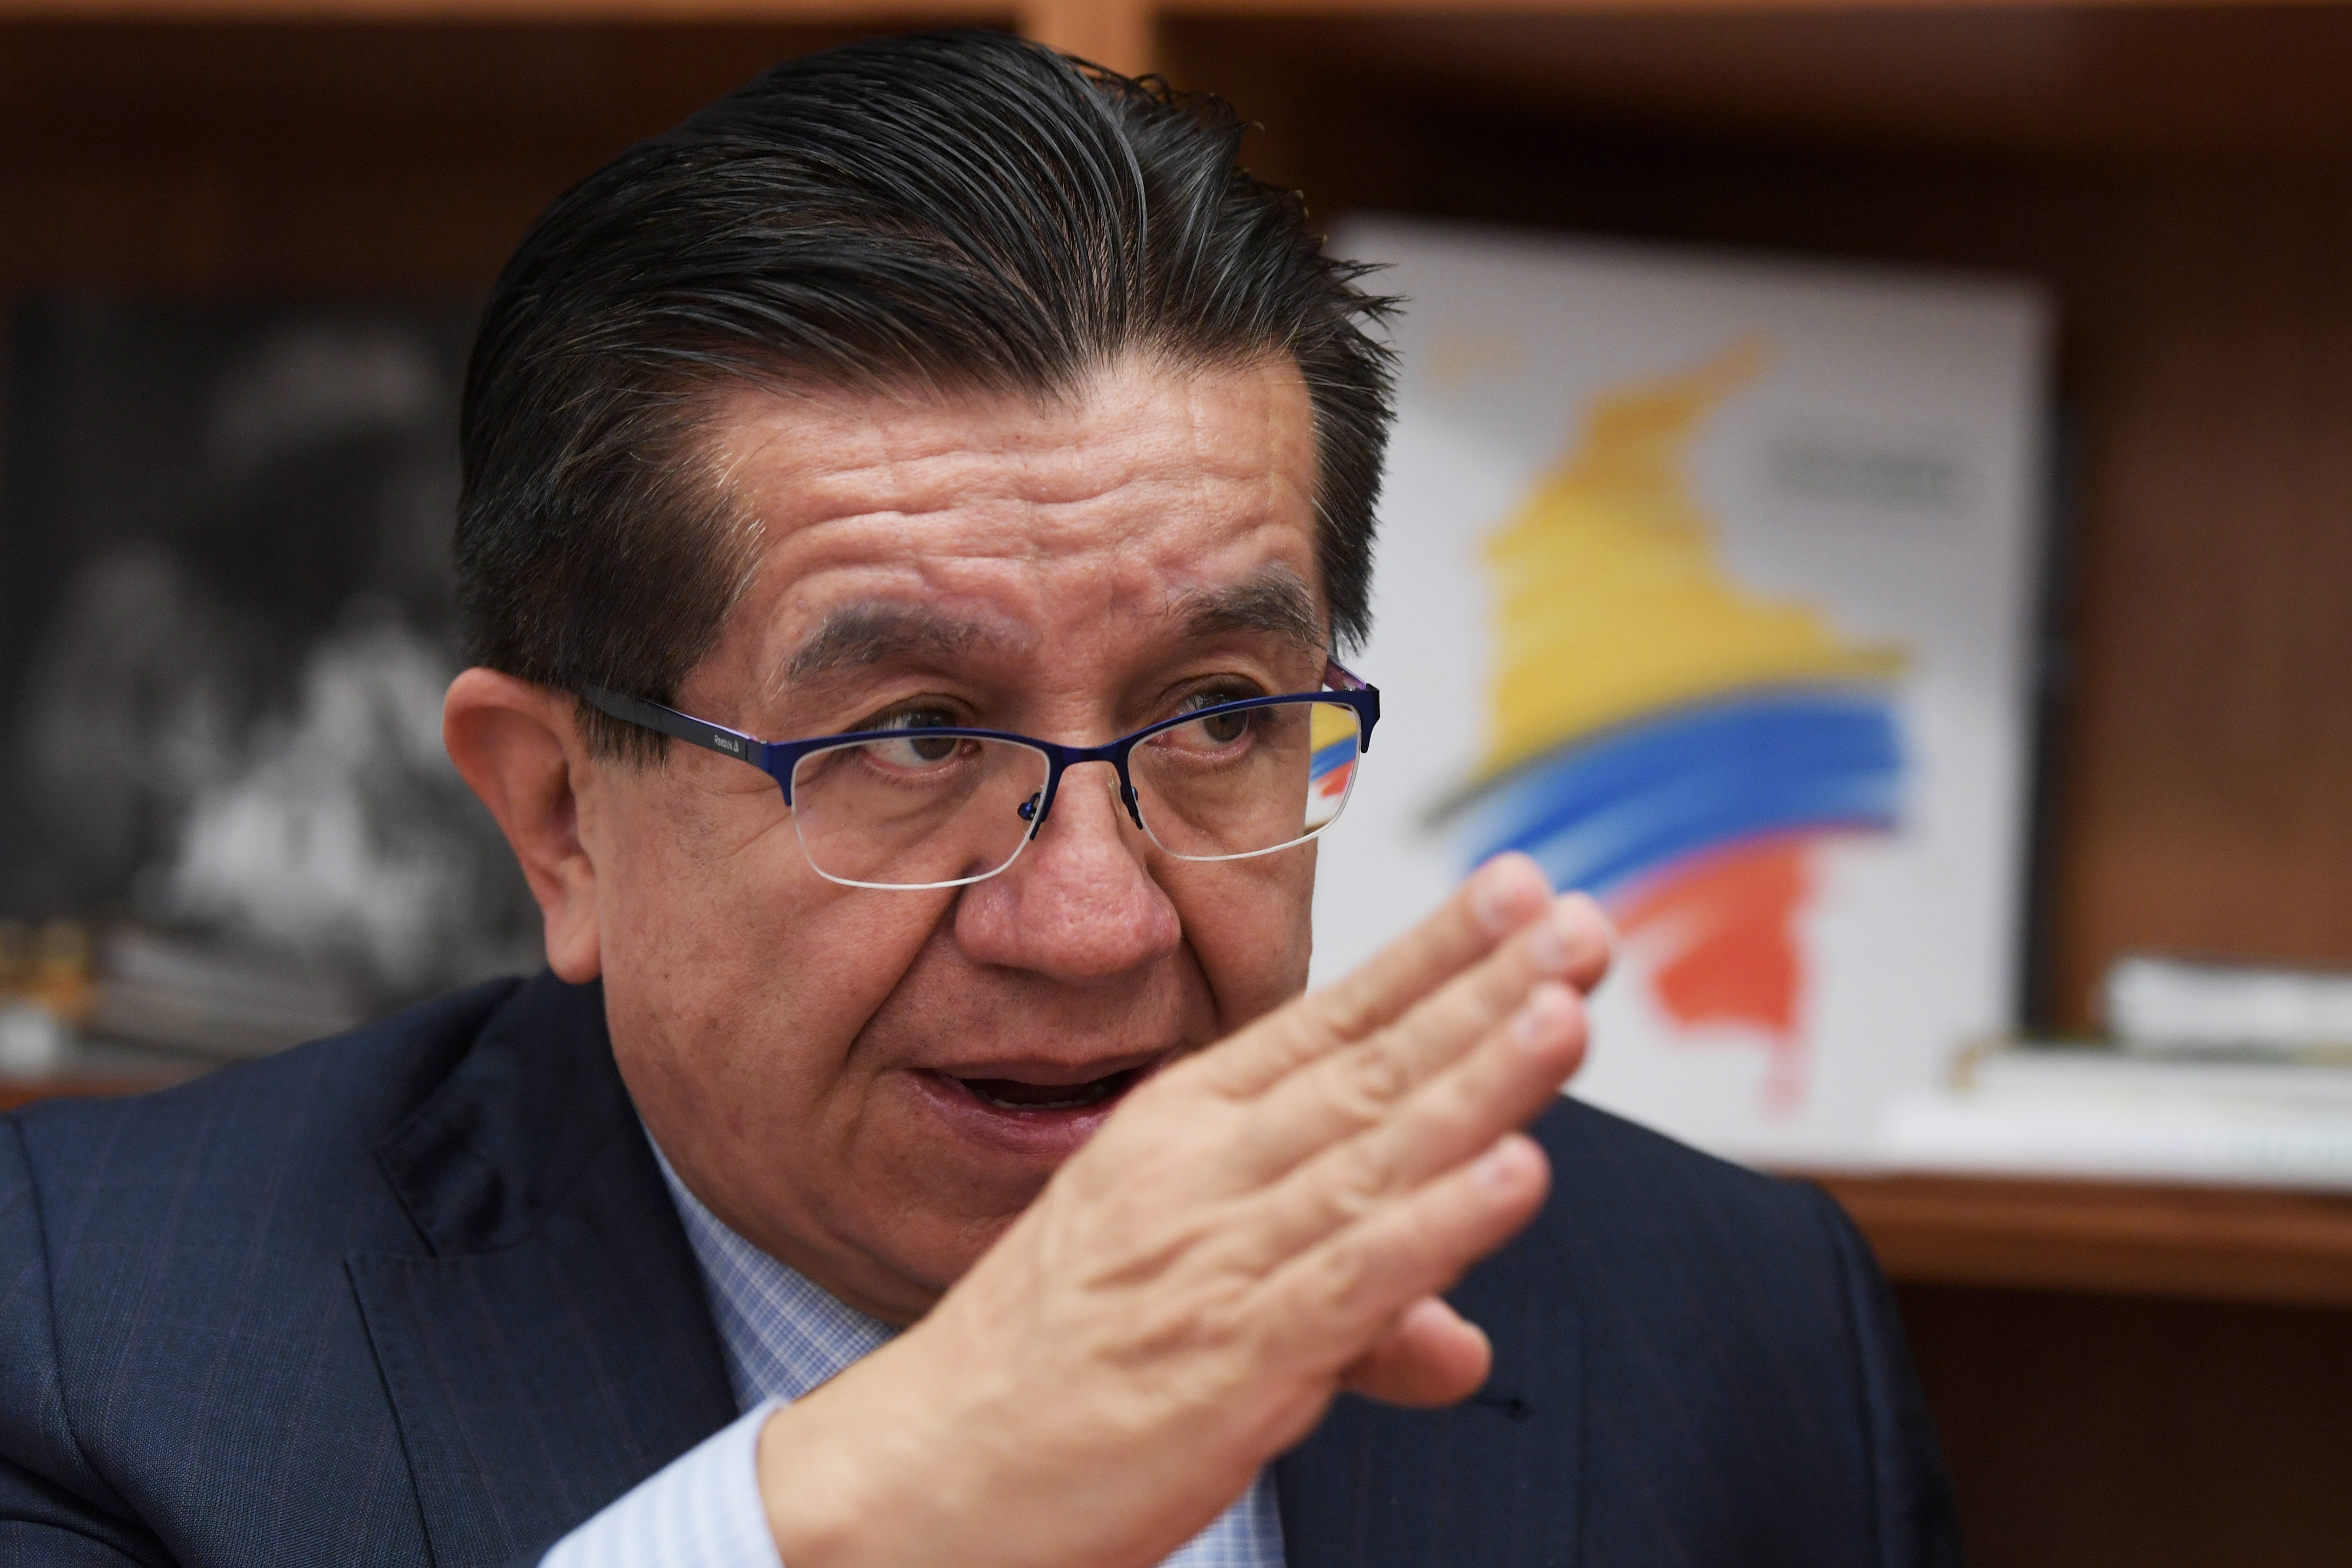 El exministro de Salud le pidió al presidente Petro que "salve la seguridad sanitaria" de Colombia EFE/ Lenin Nolly